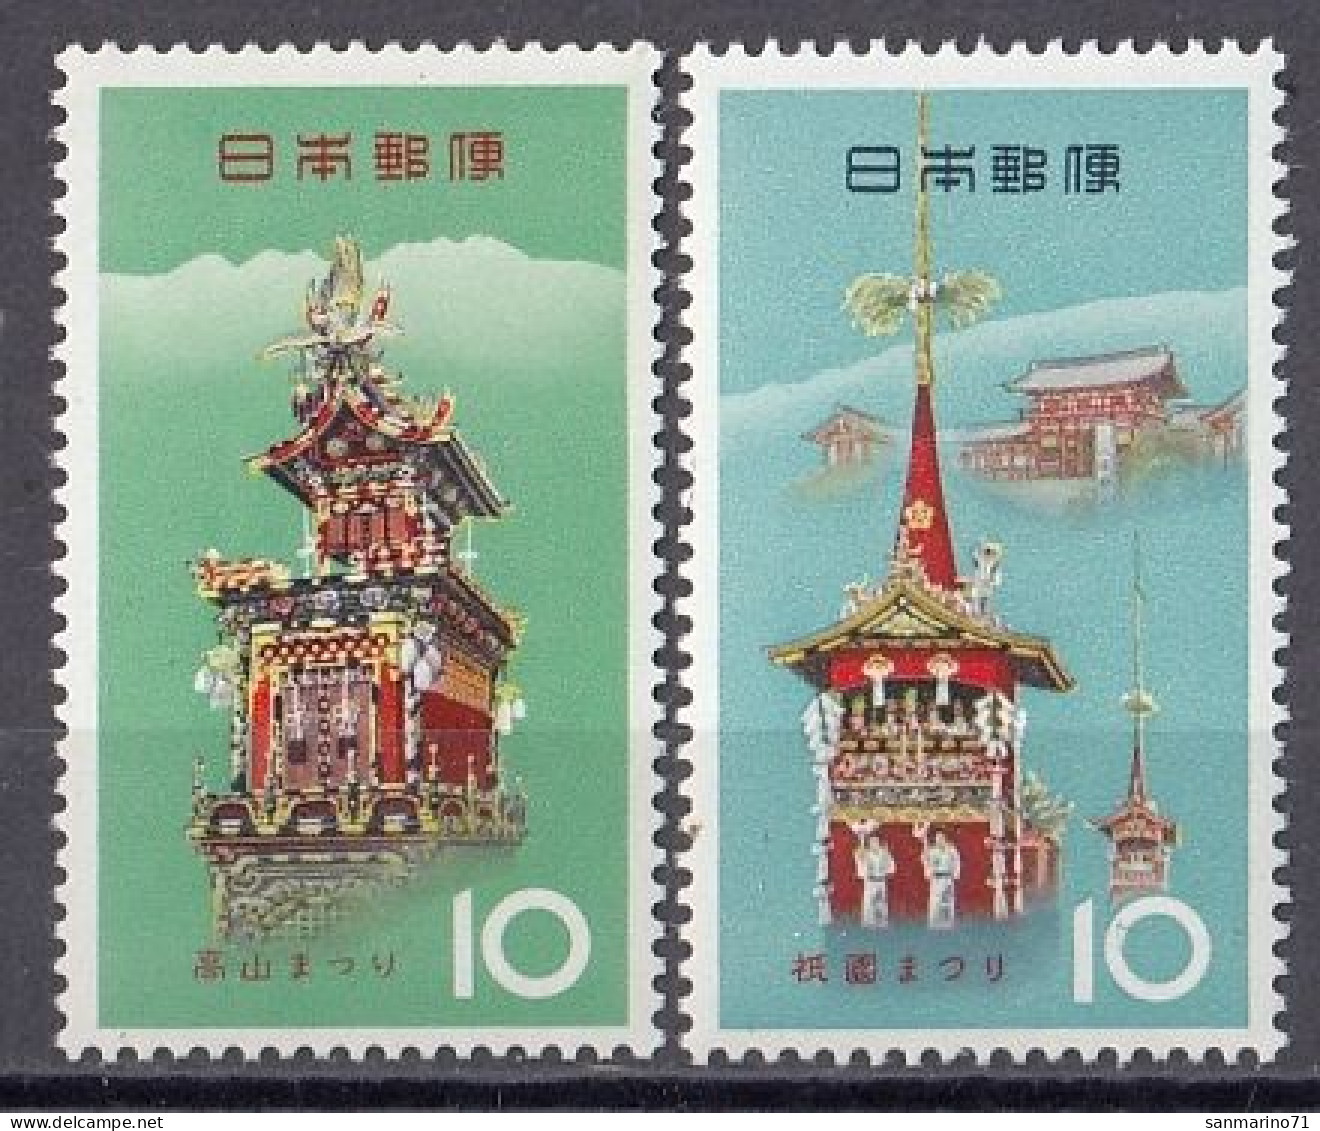 JAPAN 856-857,unused (**) - Unused Stamps